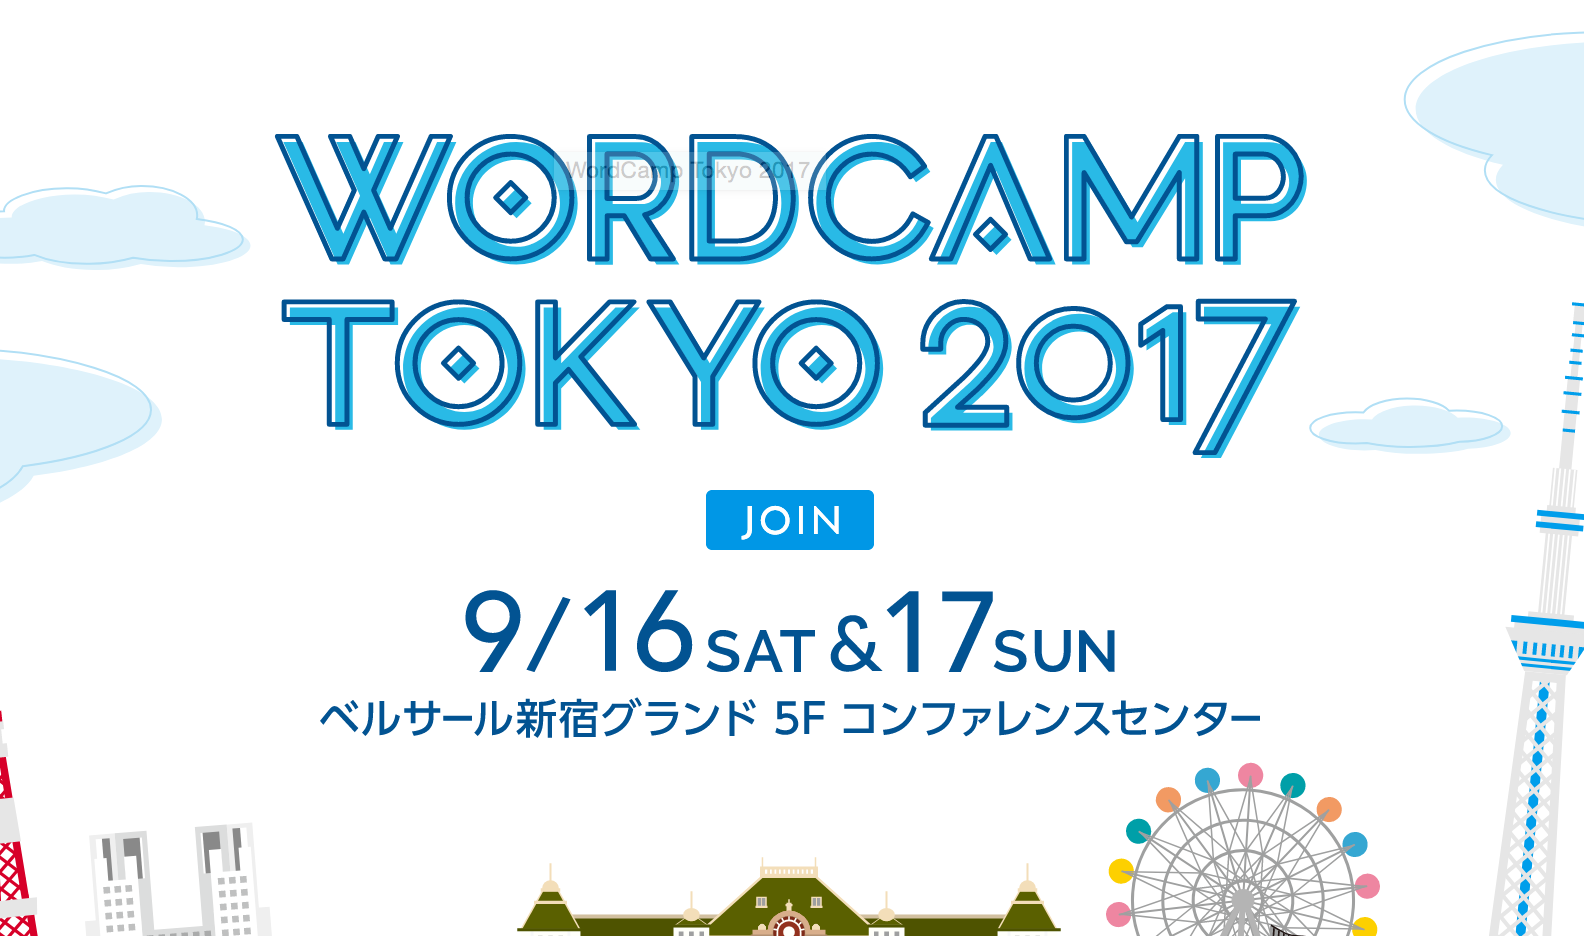 9/16-17 WordCamp Tokyo 2017 チケット販売開始!スタッフしてるので遊びに来てね